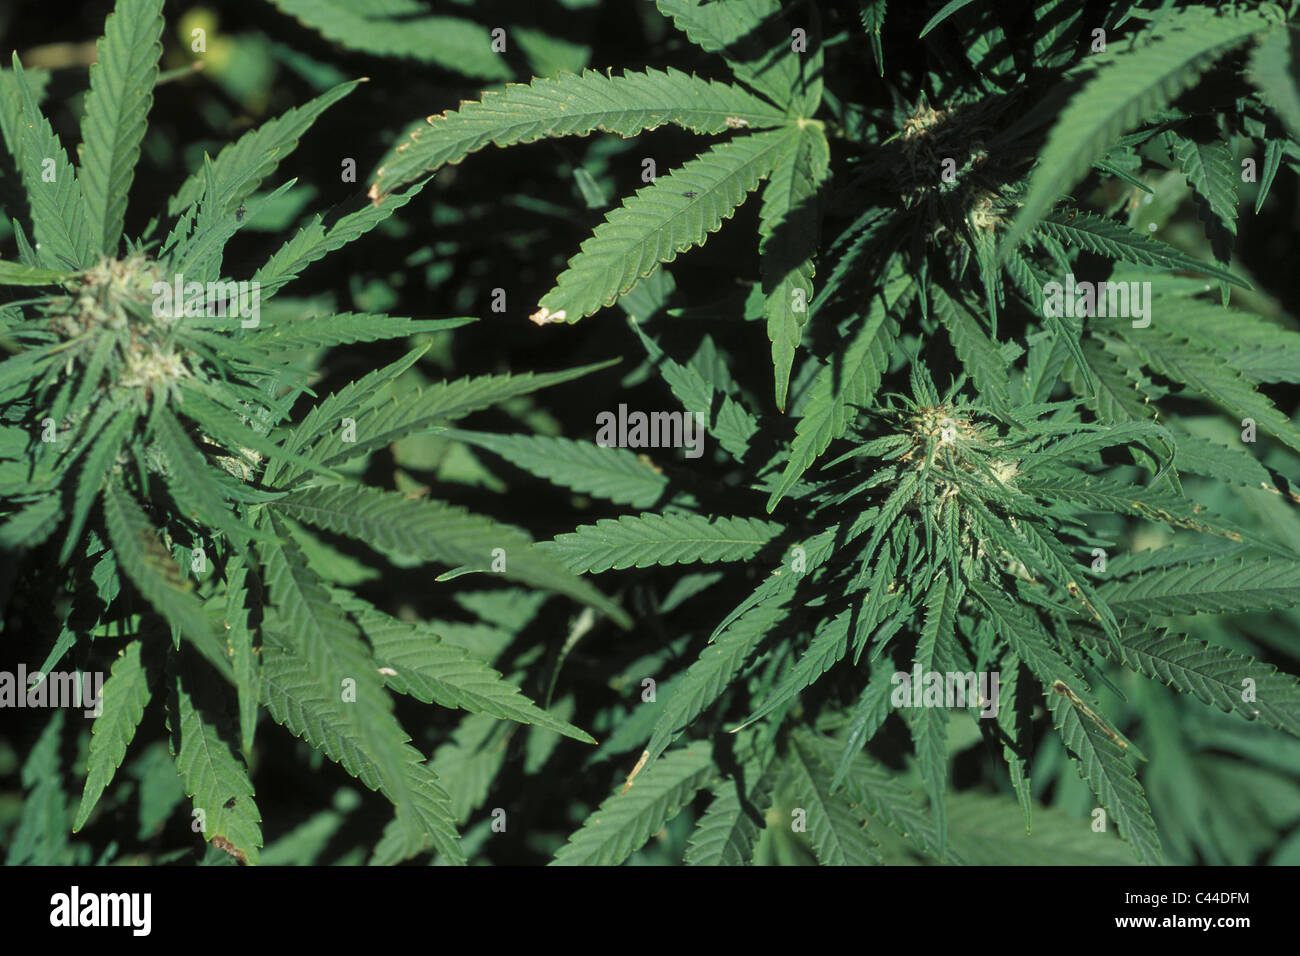 Switzerland Cannabis Drugs Hemp Valais Stockfotos und -bilder Kaufen - Alamy